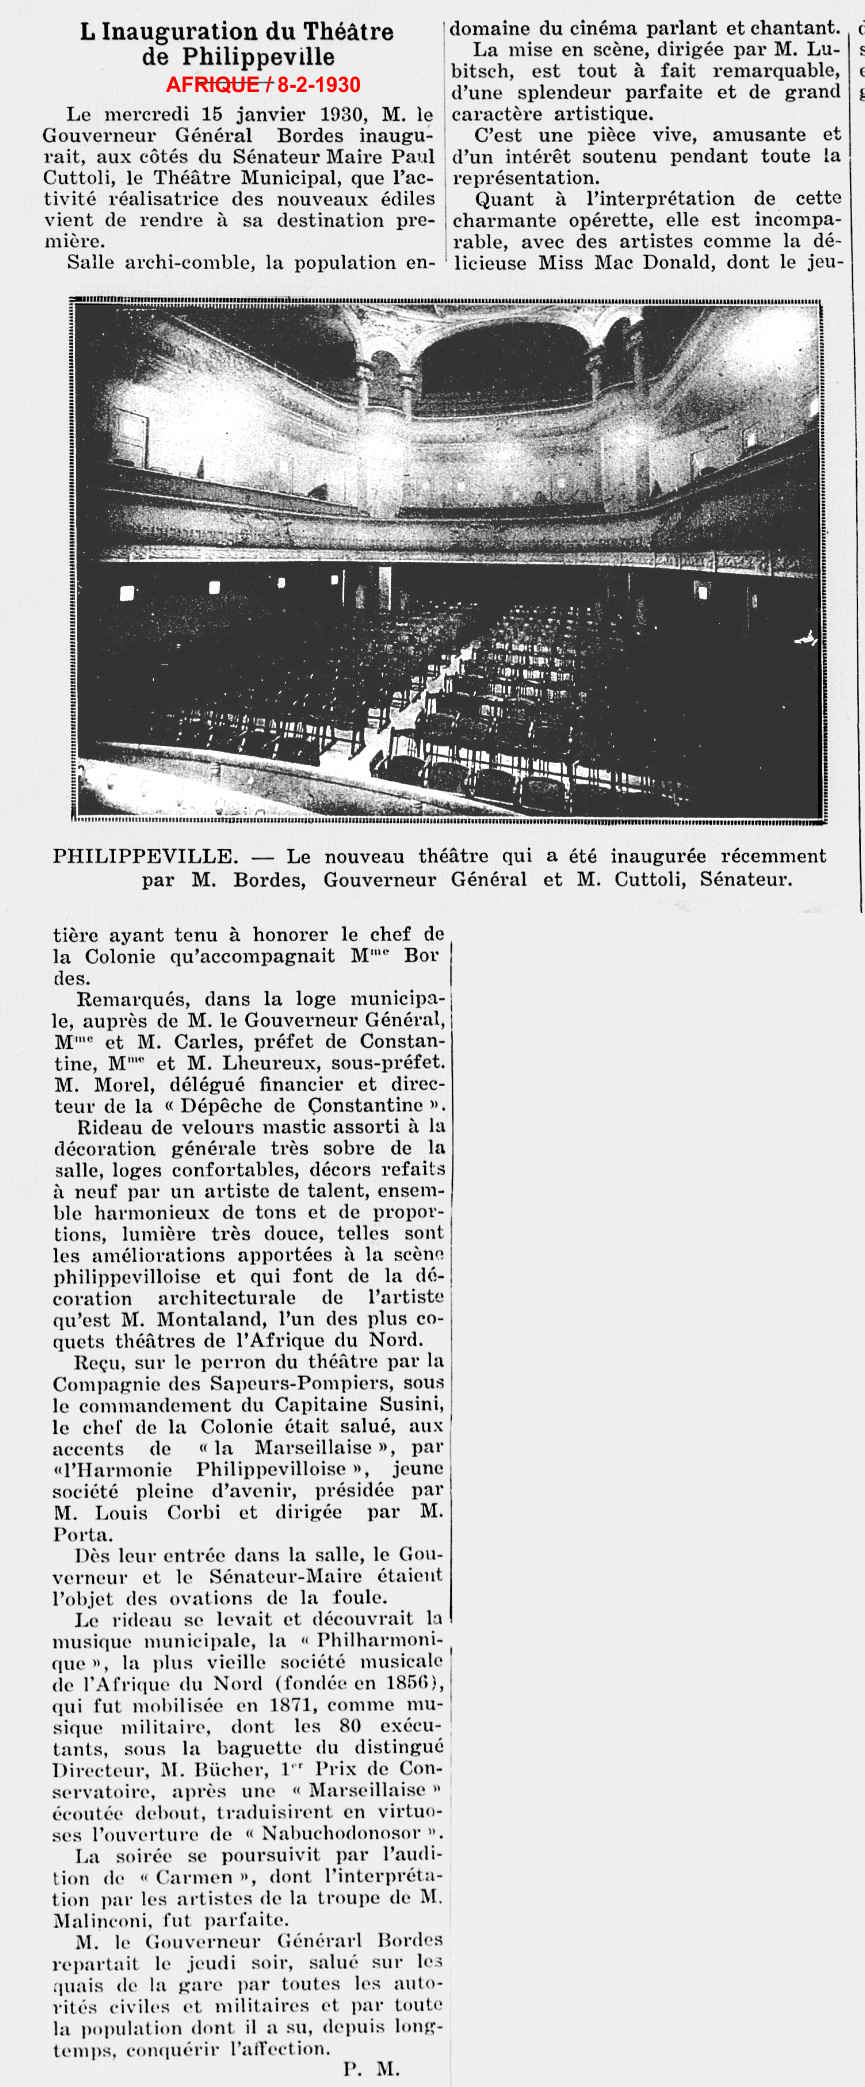 Inauguration du théâtre - architecte Montaland